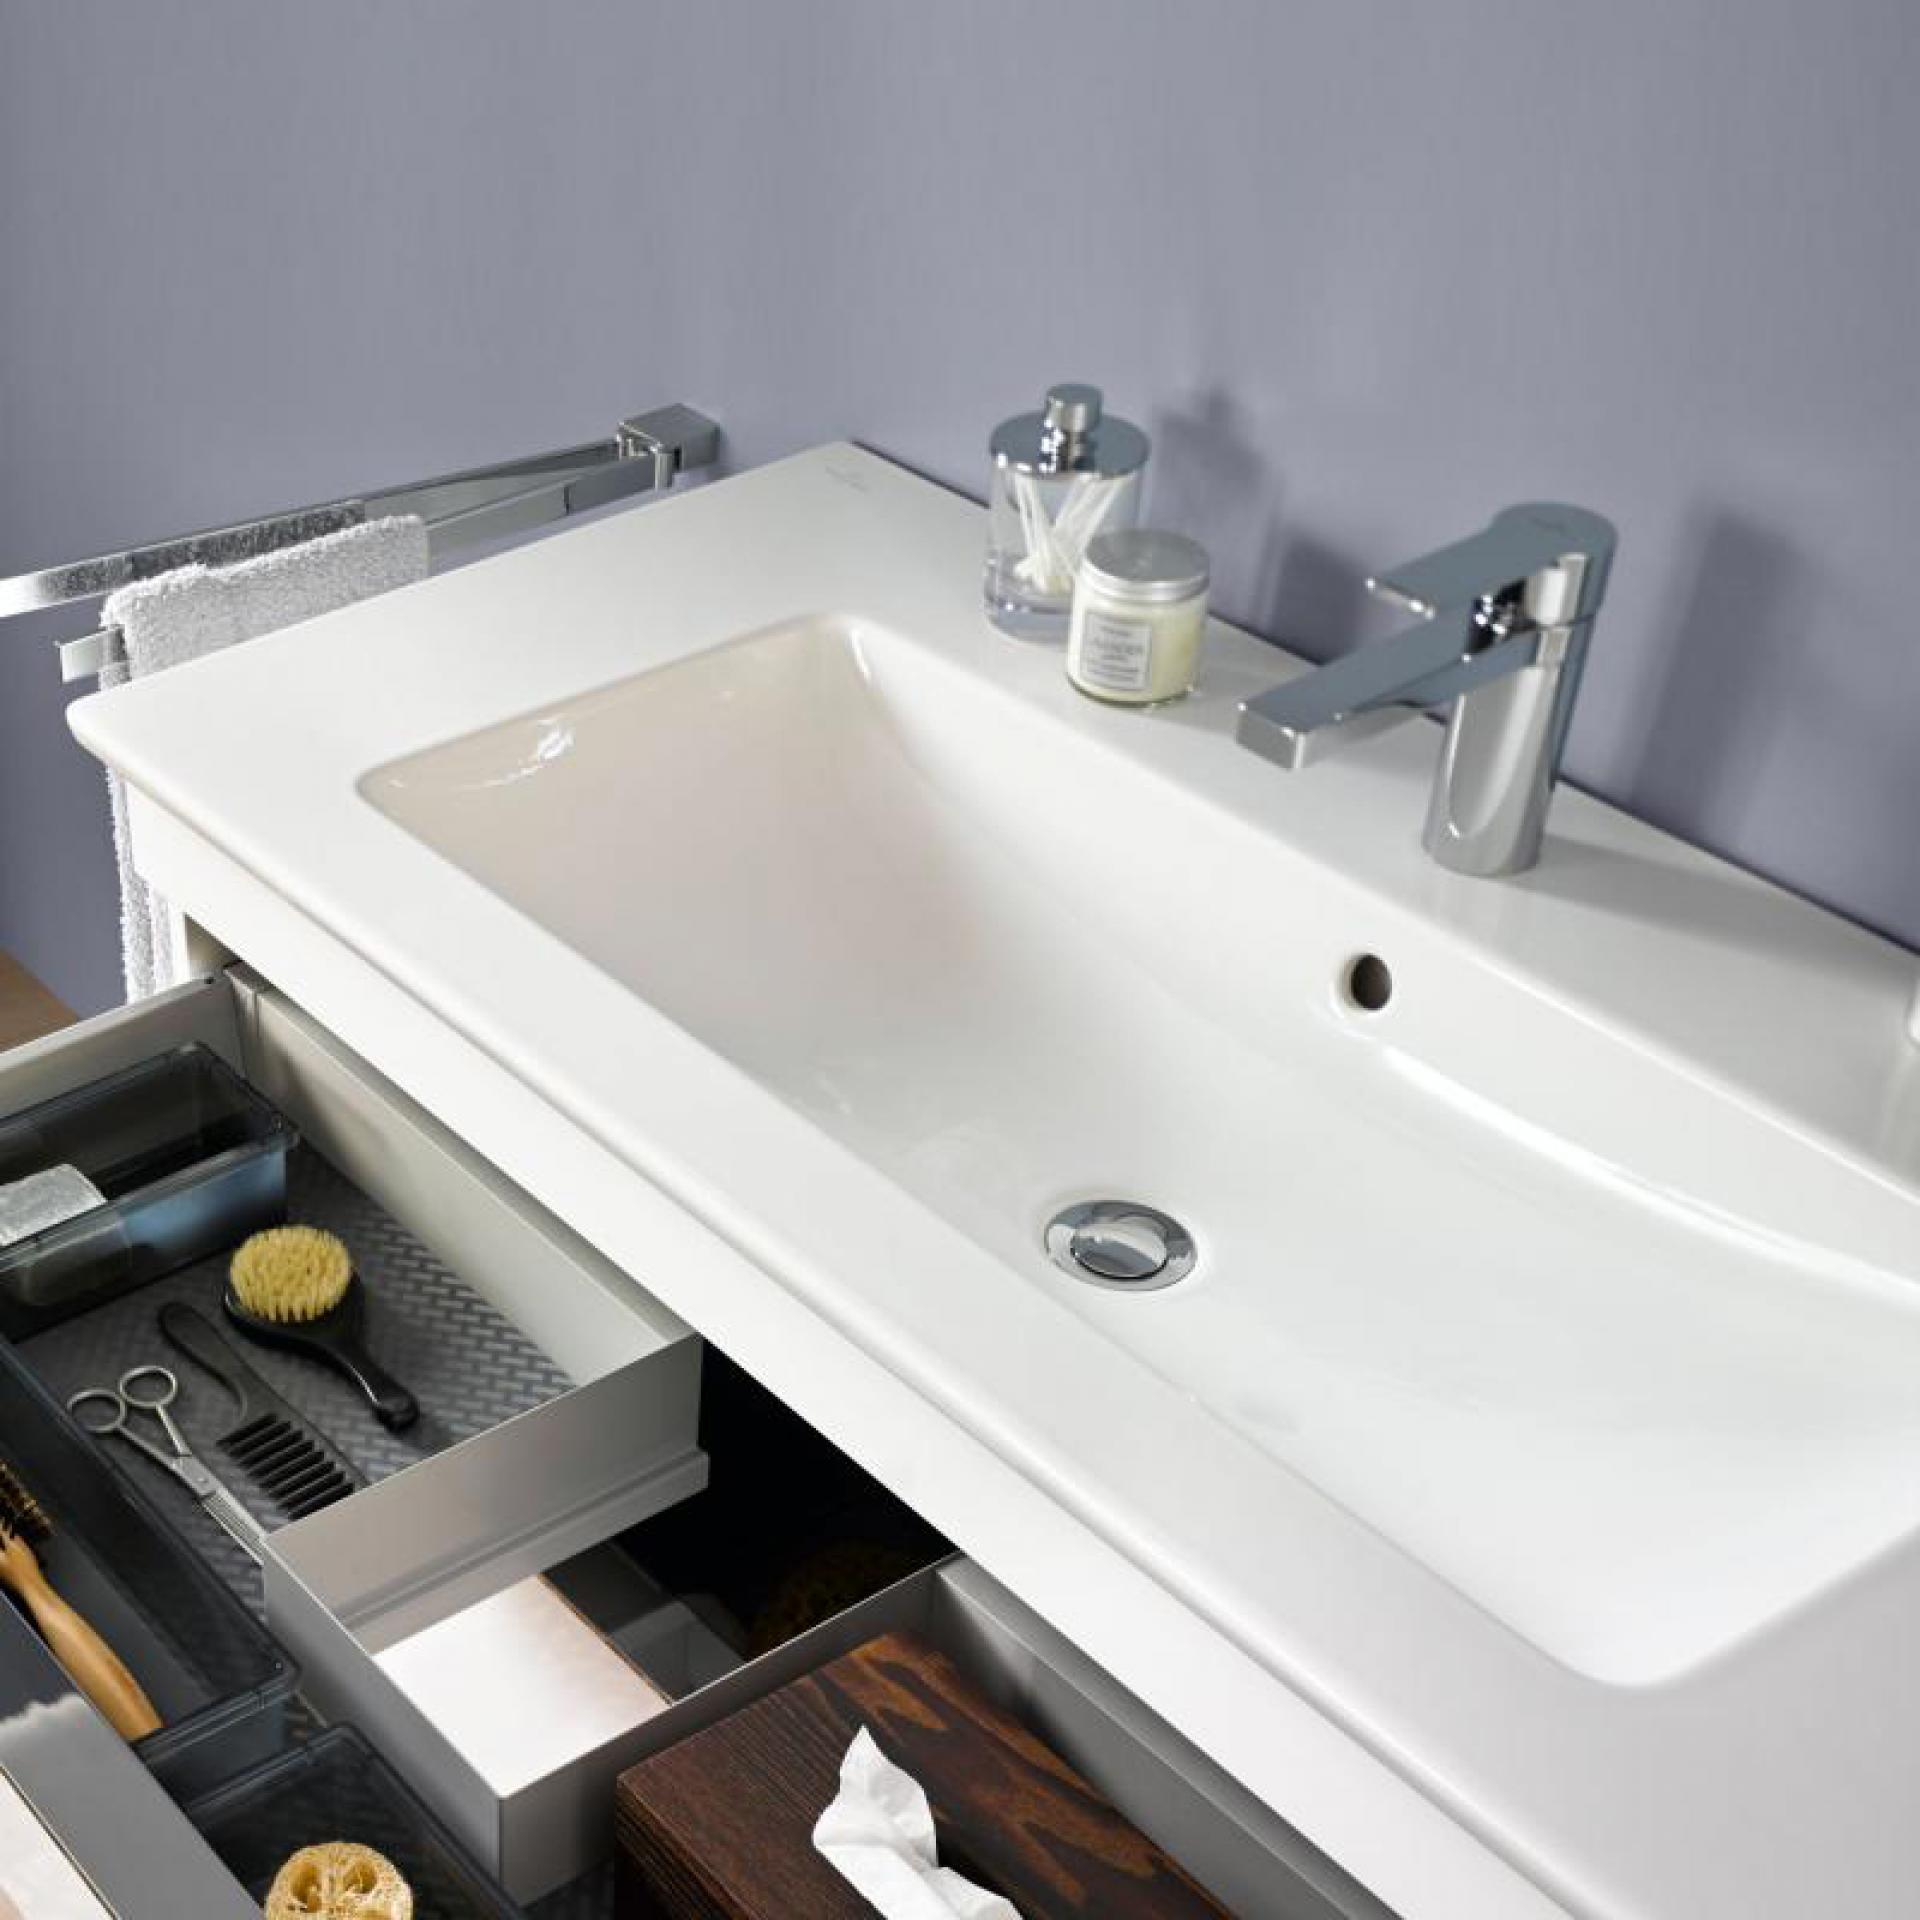 Мебель для ванной Villeroy & Boch Venticello 80 A92504 white wood